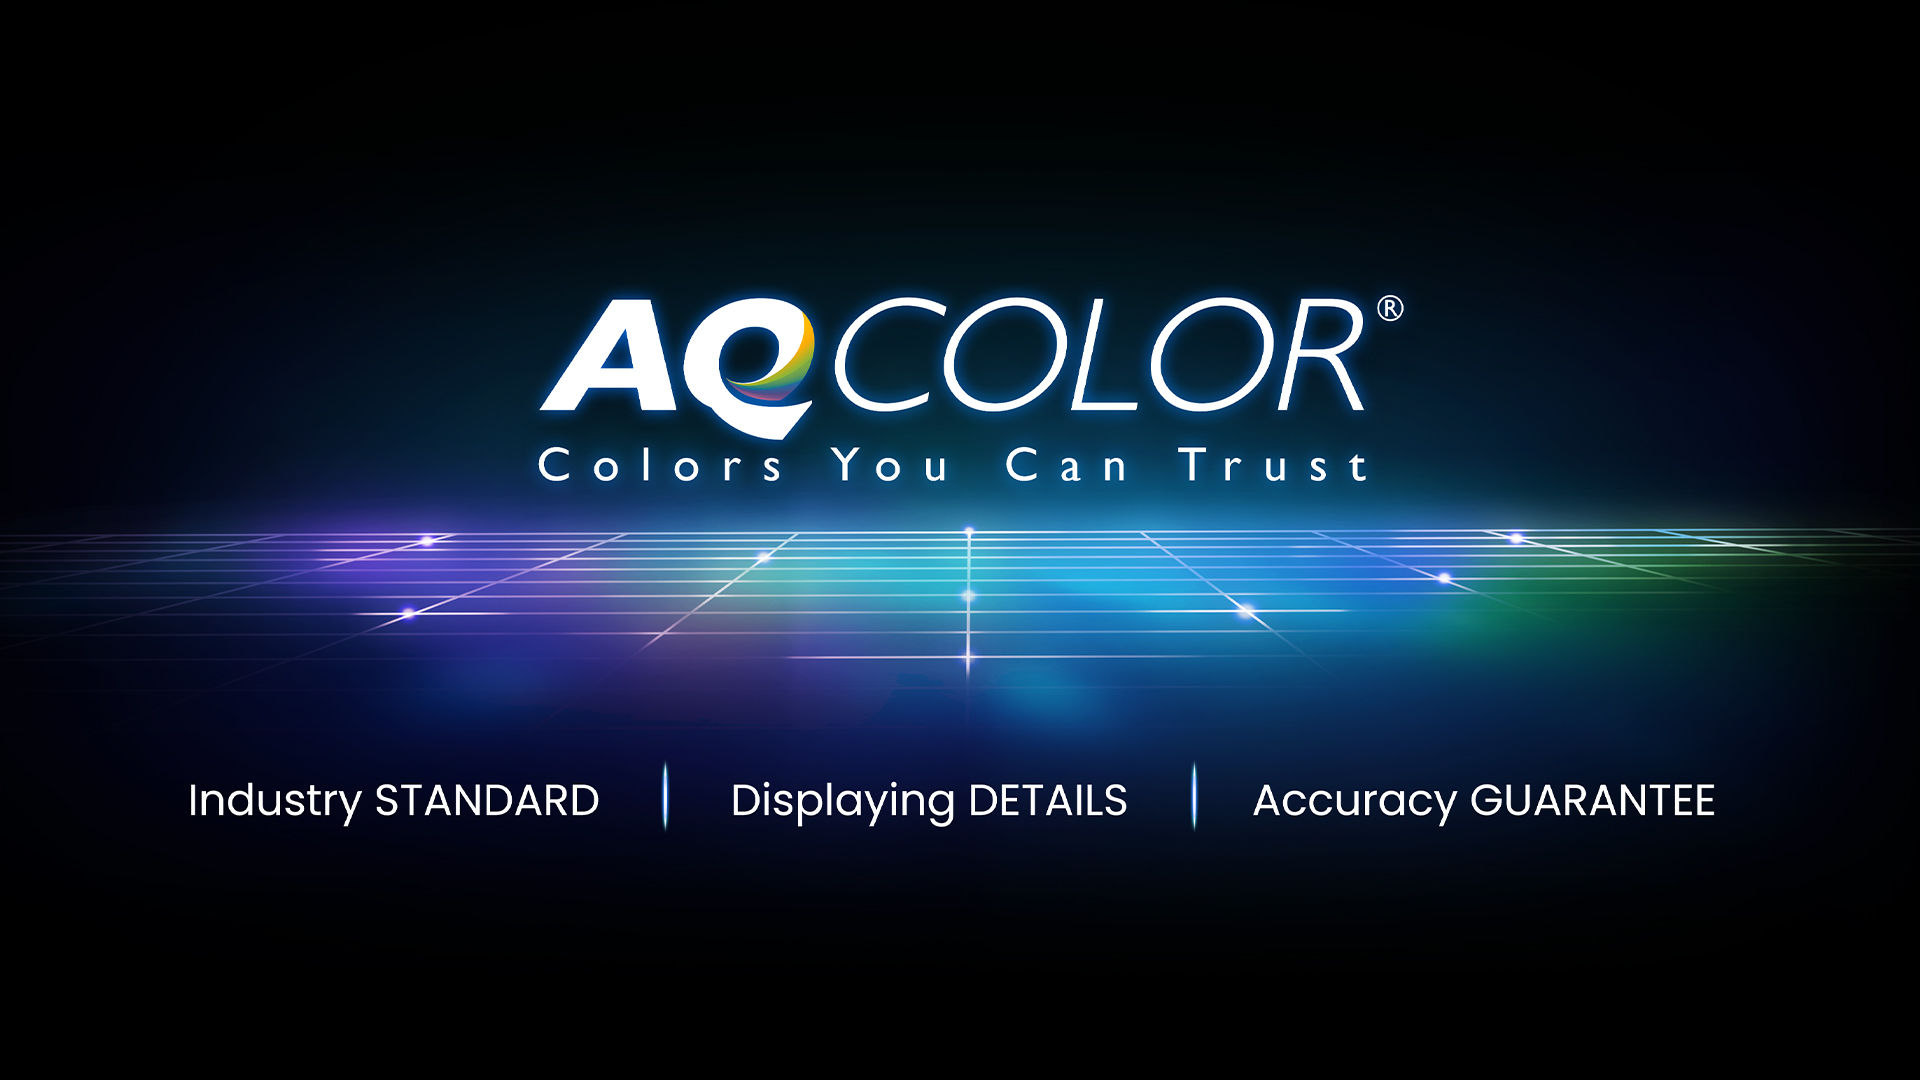 Công nghệ AQCOLOR của BenQ mang đến khả năng Tái tạo Chính xác. Điều này có nghĩa là màn hình sẽ hiển thị màu chính xác như thật. Được dẫn dắt bởi một chuyên gia về màu sắc, nhóm BenQ đã tham gia ICC và ISO để thiết lập các tiêu chuẩn và hướng dẫn triển khai liên quan đến màu sắc.